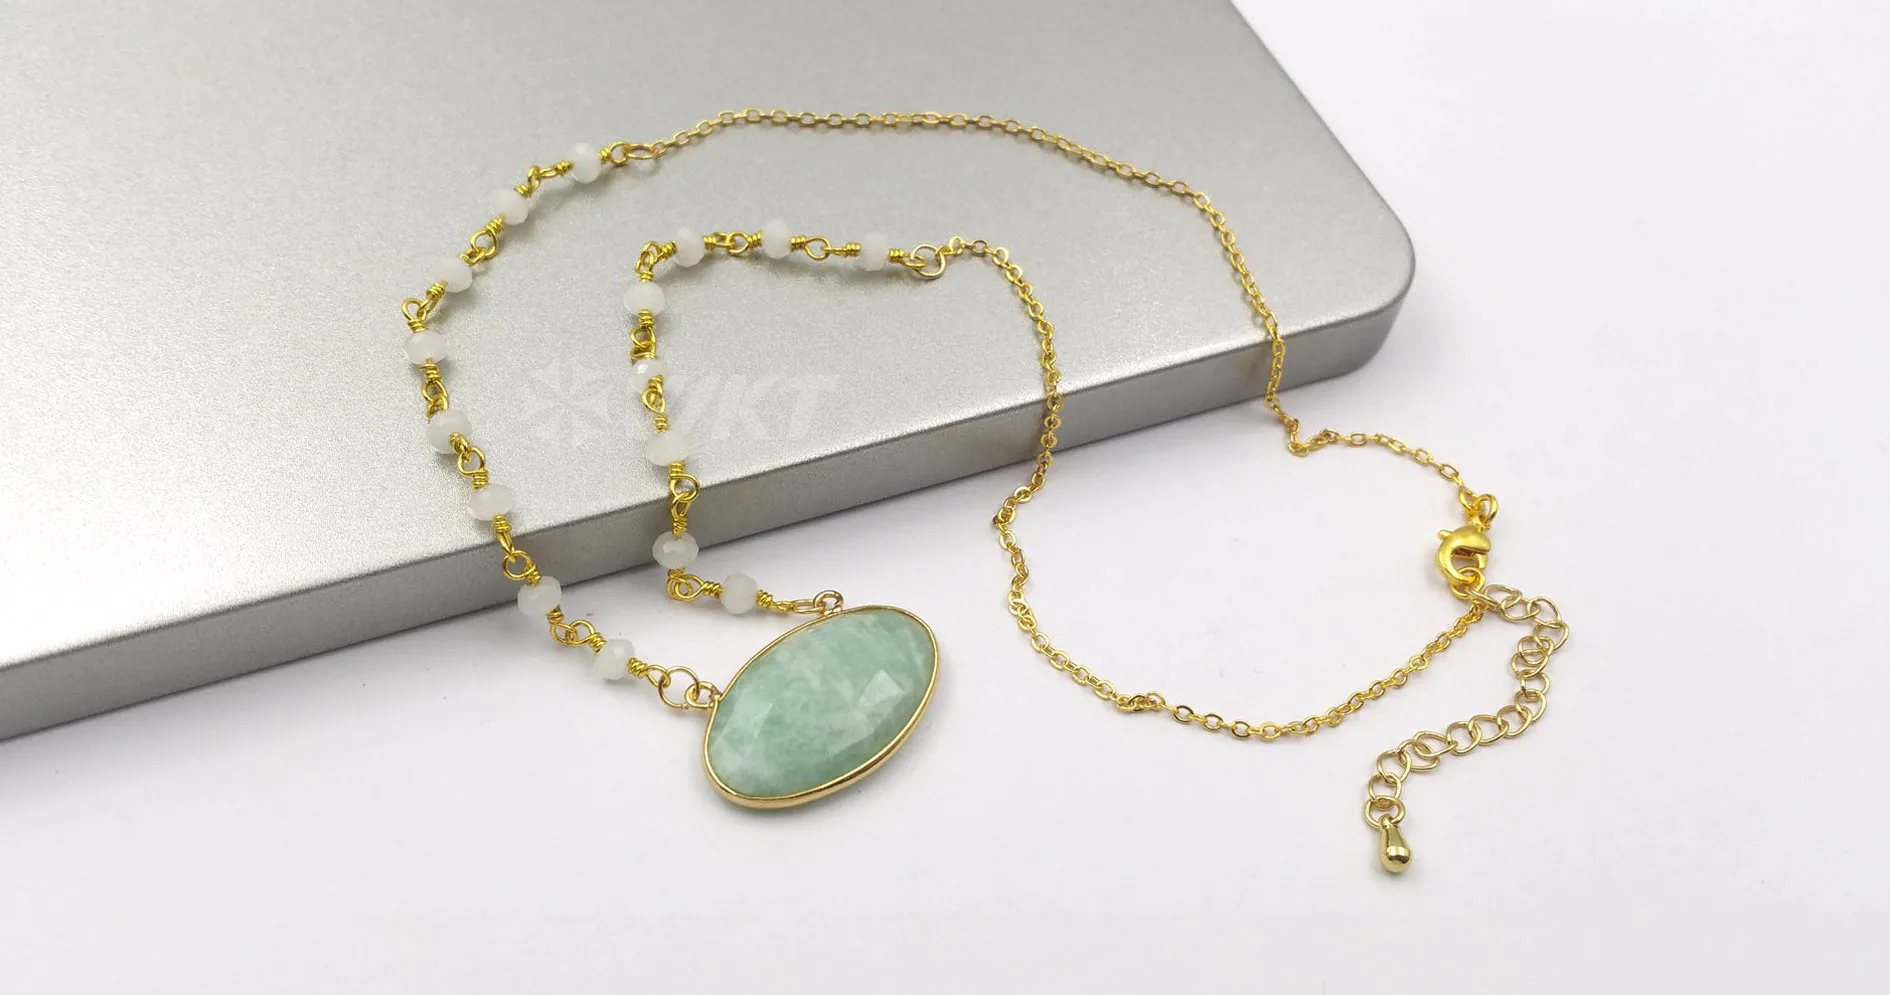 WT-N1168 капли воды форма натуральная бирюза камень ожерелье из круглых бусин Шарм женщин Мода ожерелье, золото, Ювелирное Украшение